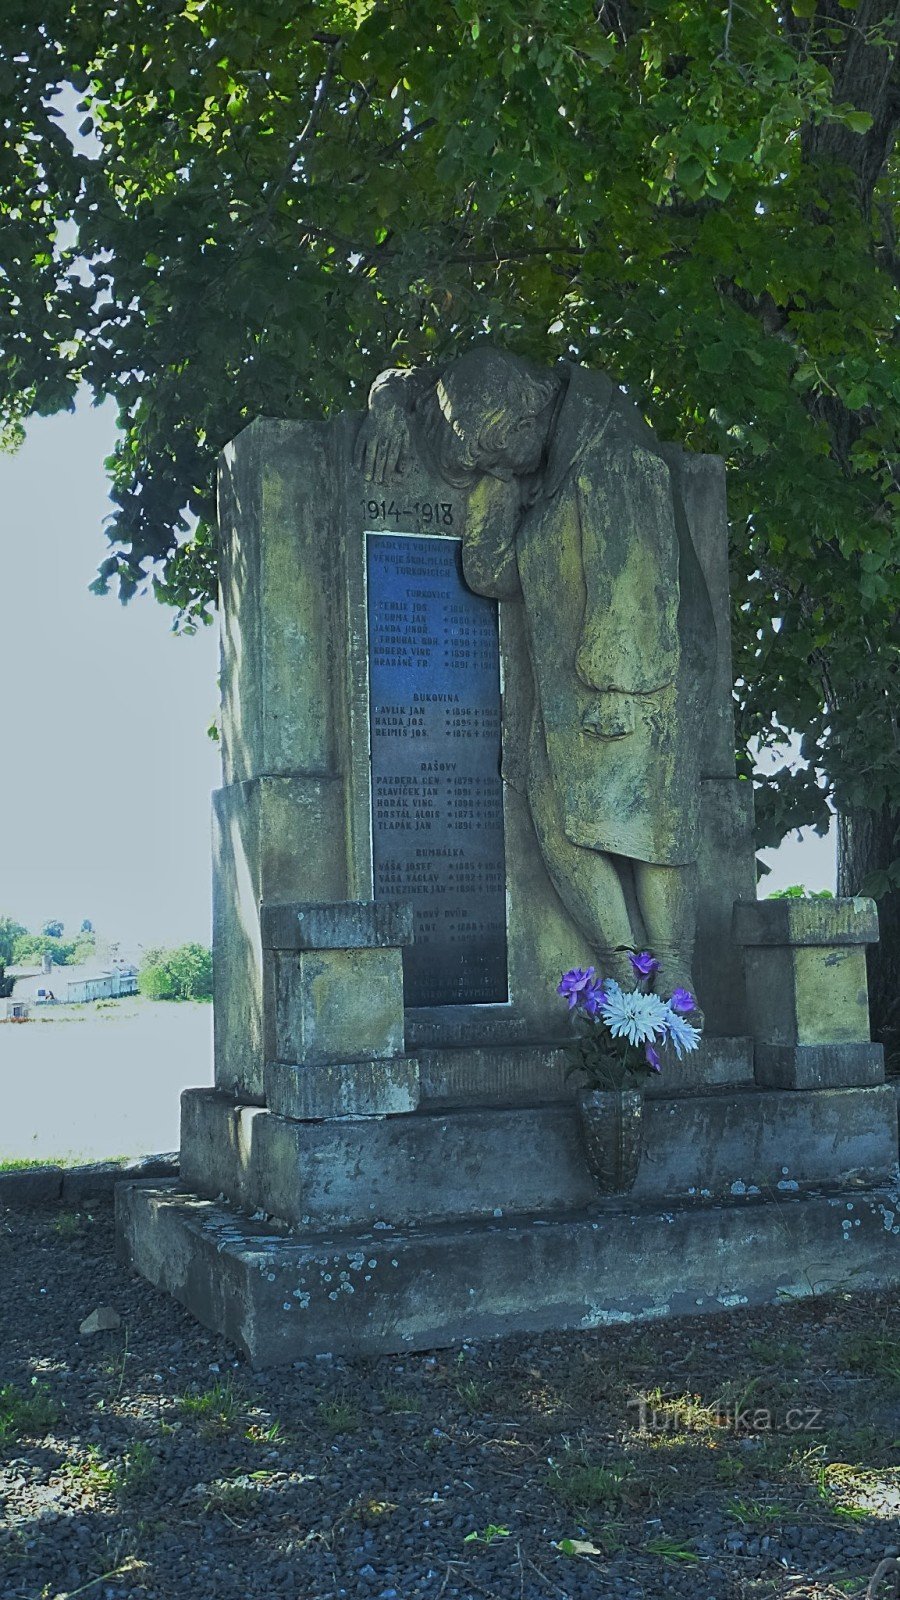 Στο μνημείο είναι χαραγμένα 19 ονόματα πεσόντων στρατιωτών από τα γύρω χωριά